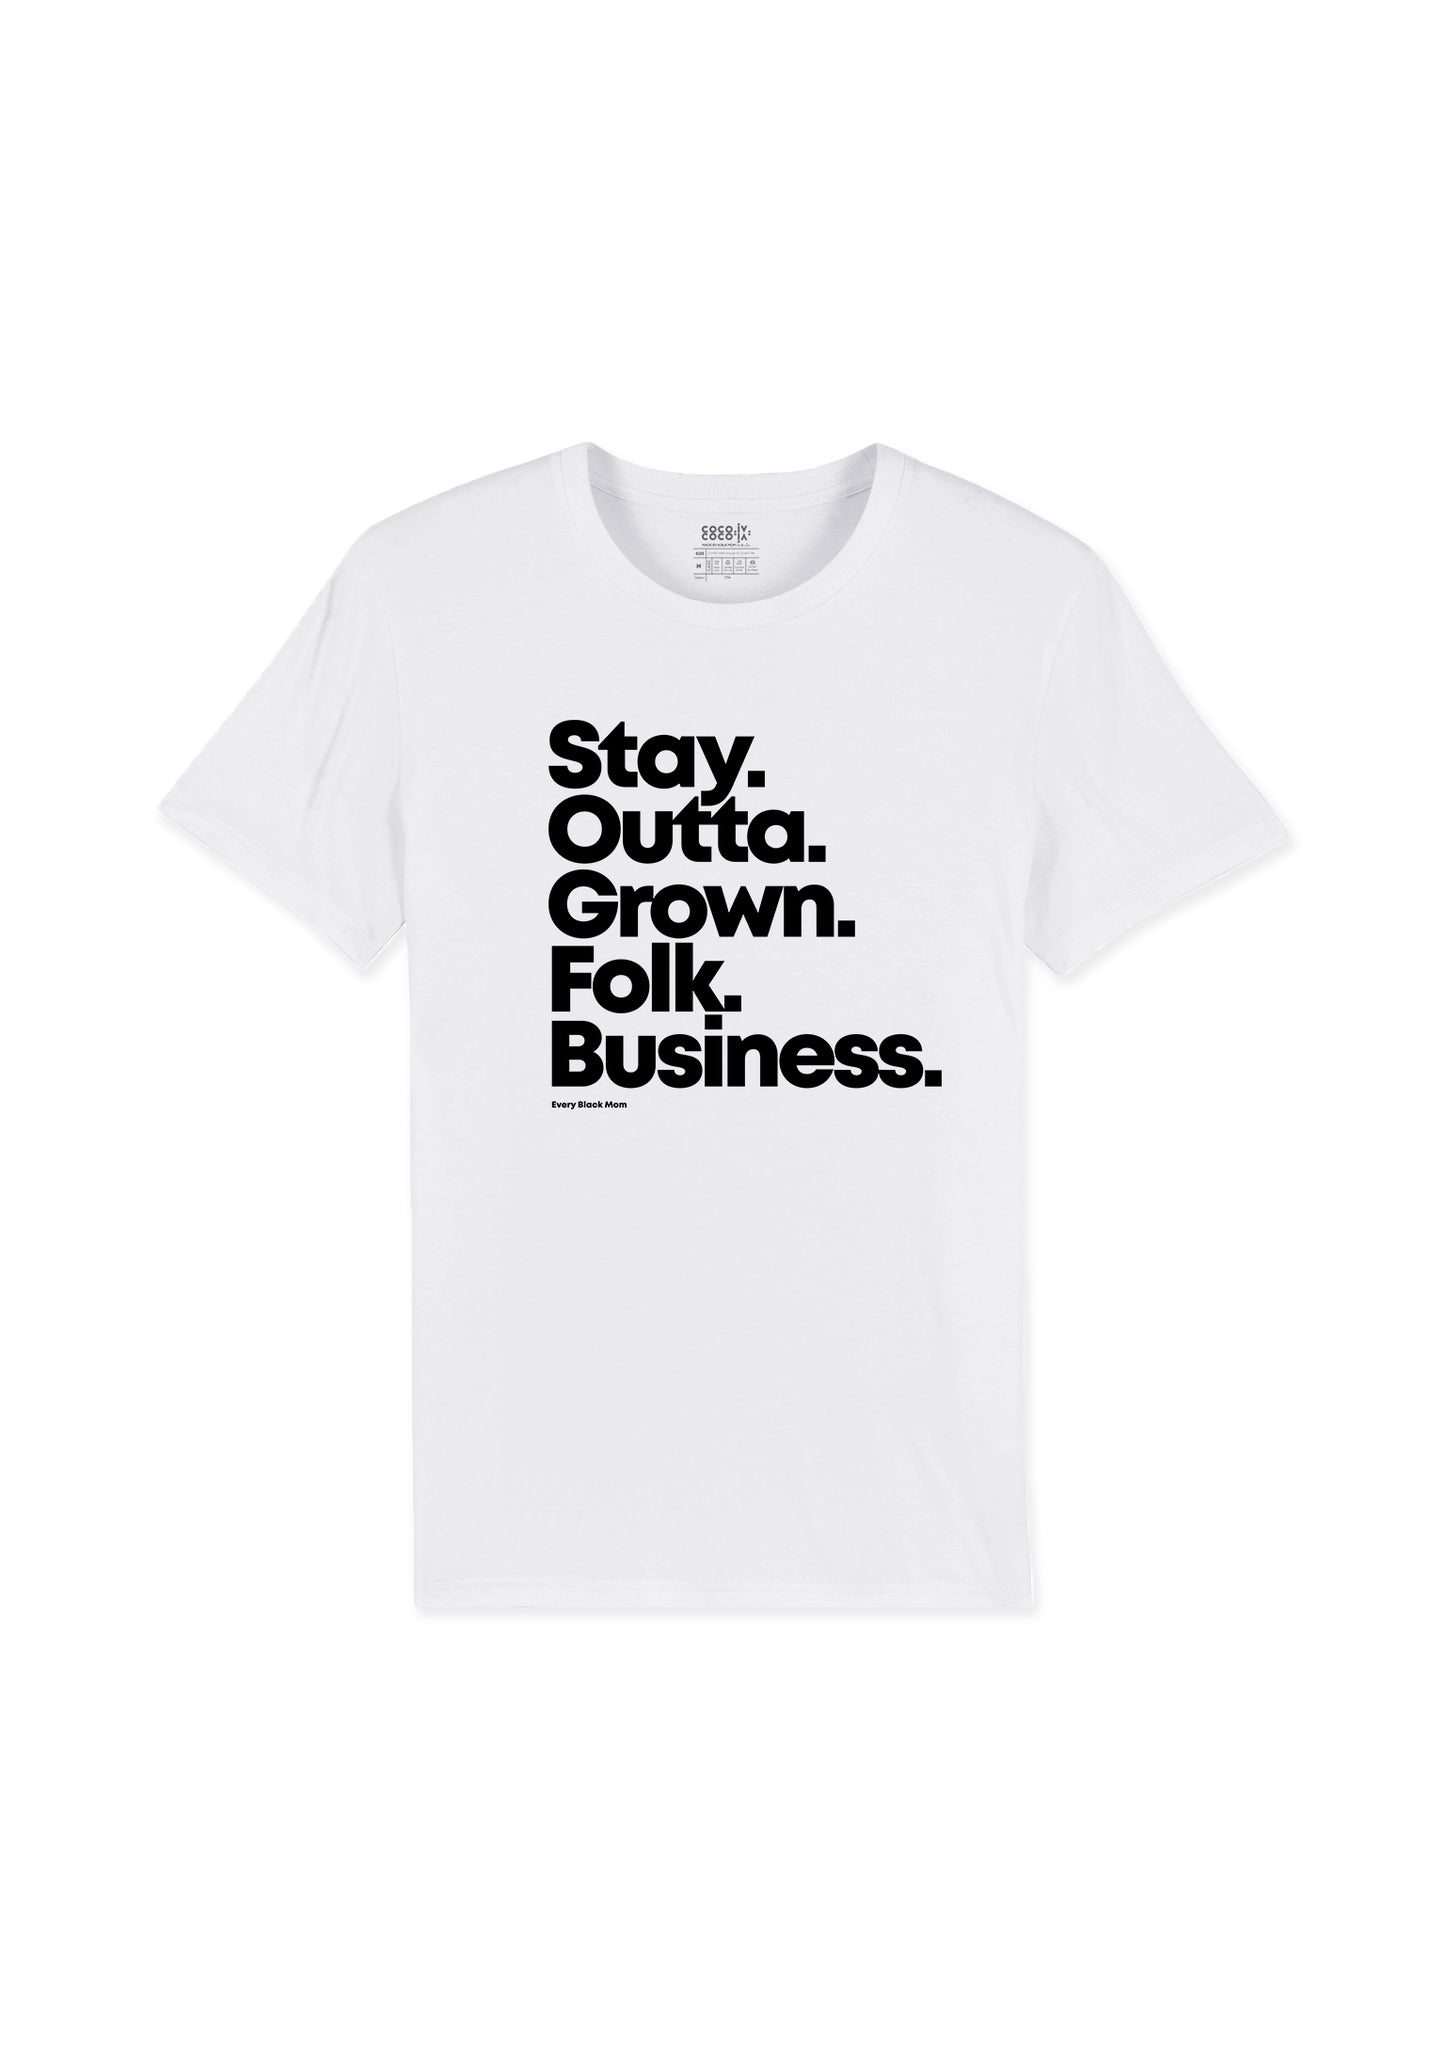 Grown Folk Business T-Shirt